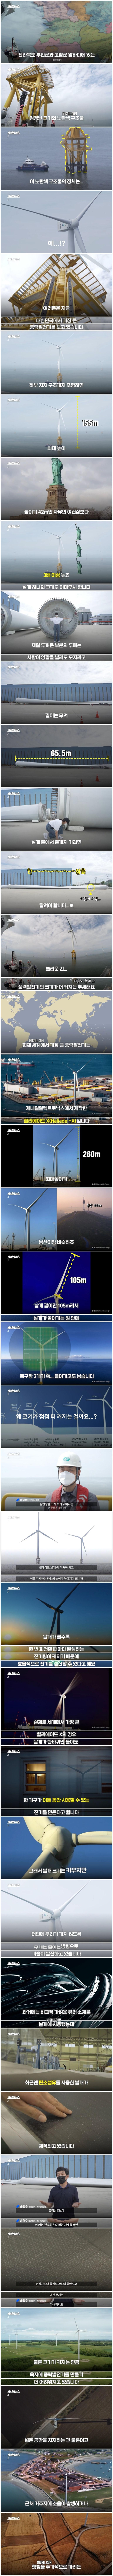 한국에서 만든 155m 초대형 풍력발전기1.jpg